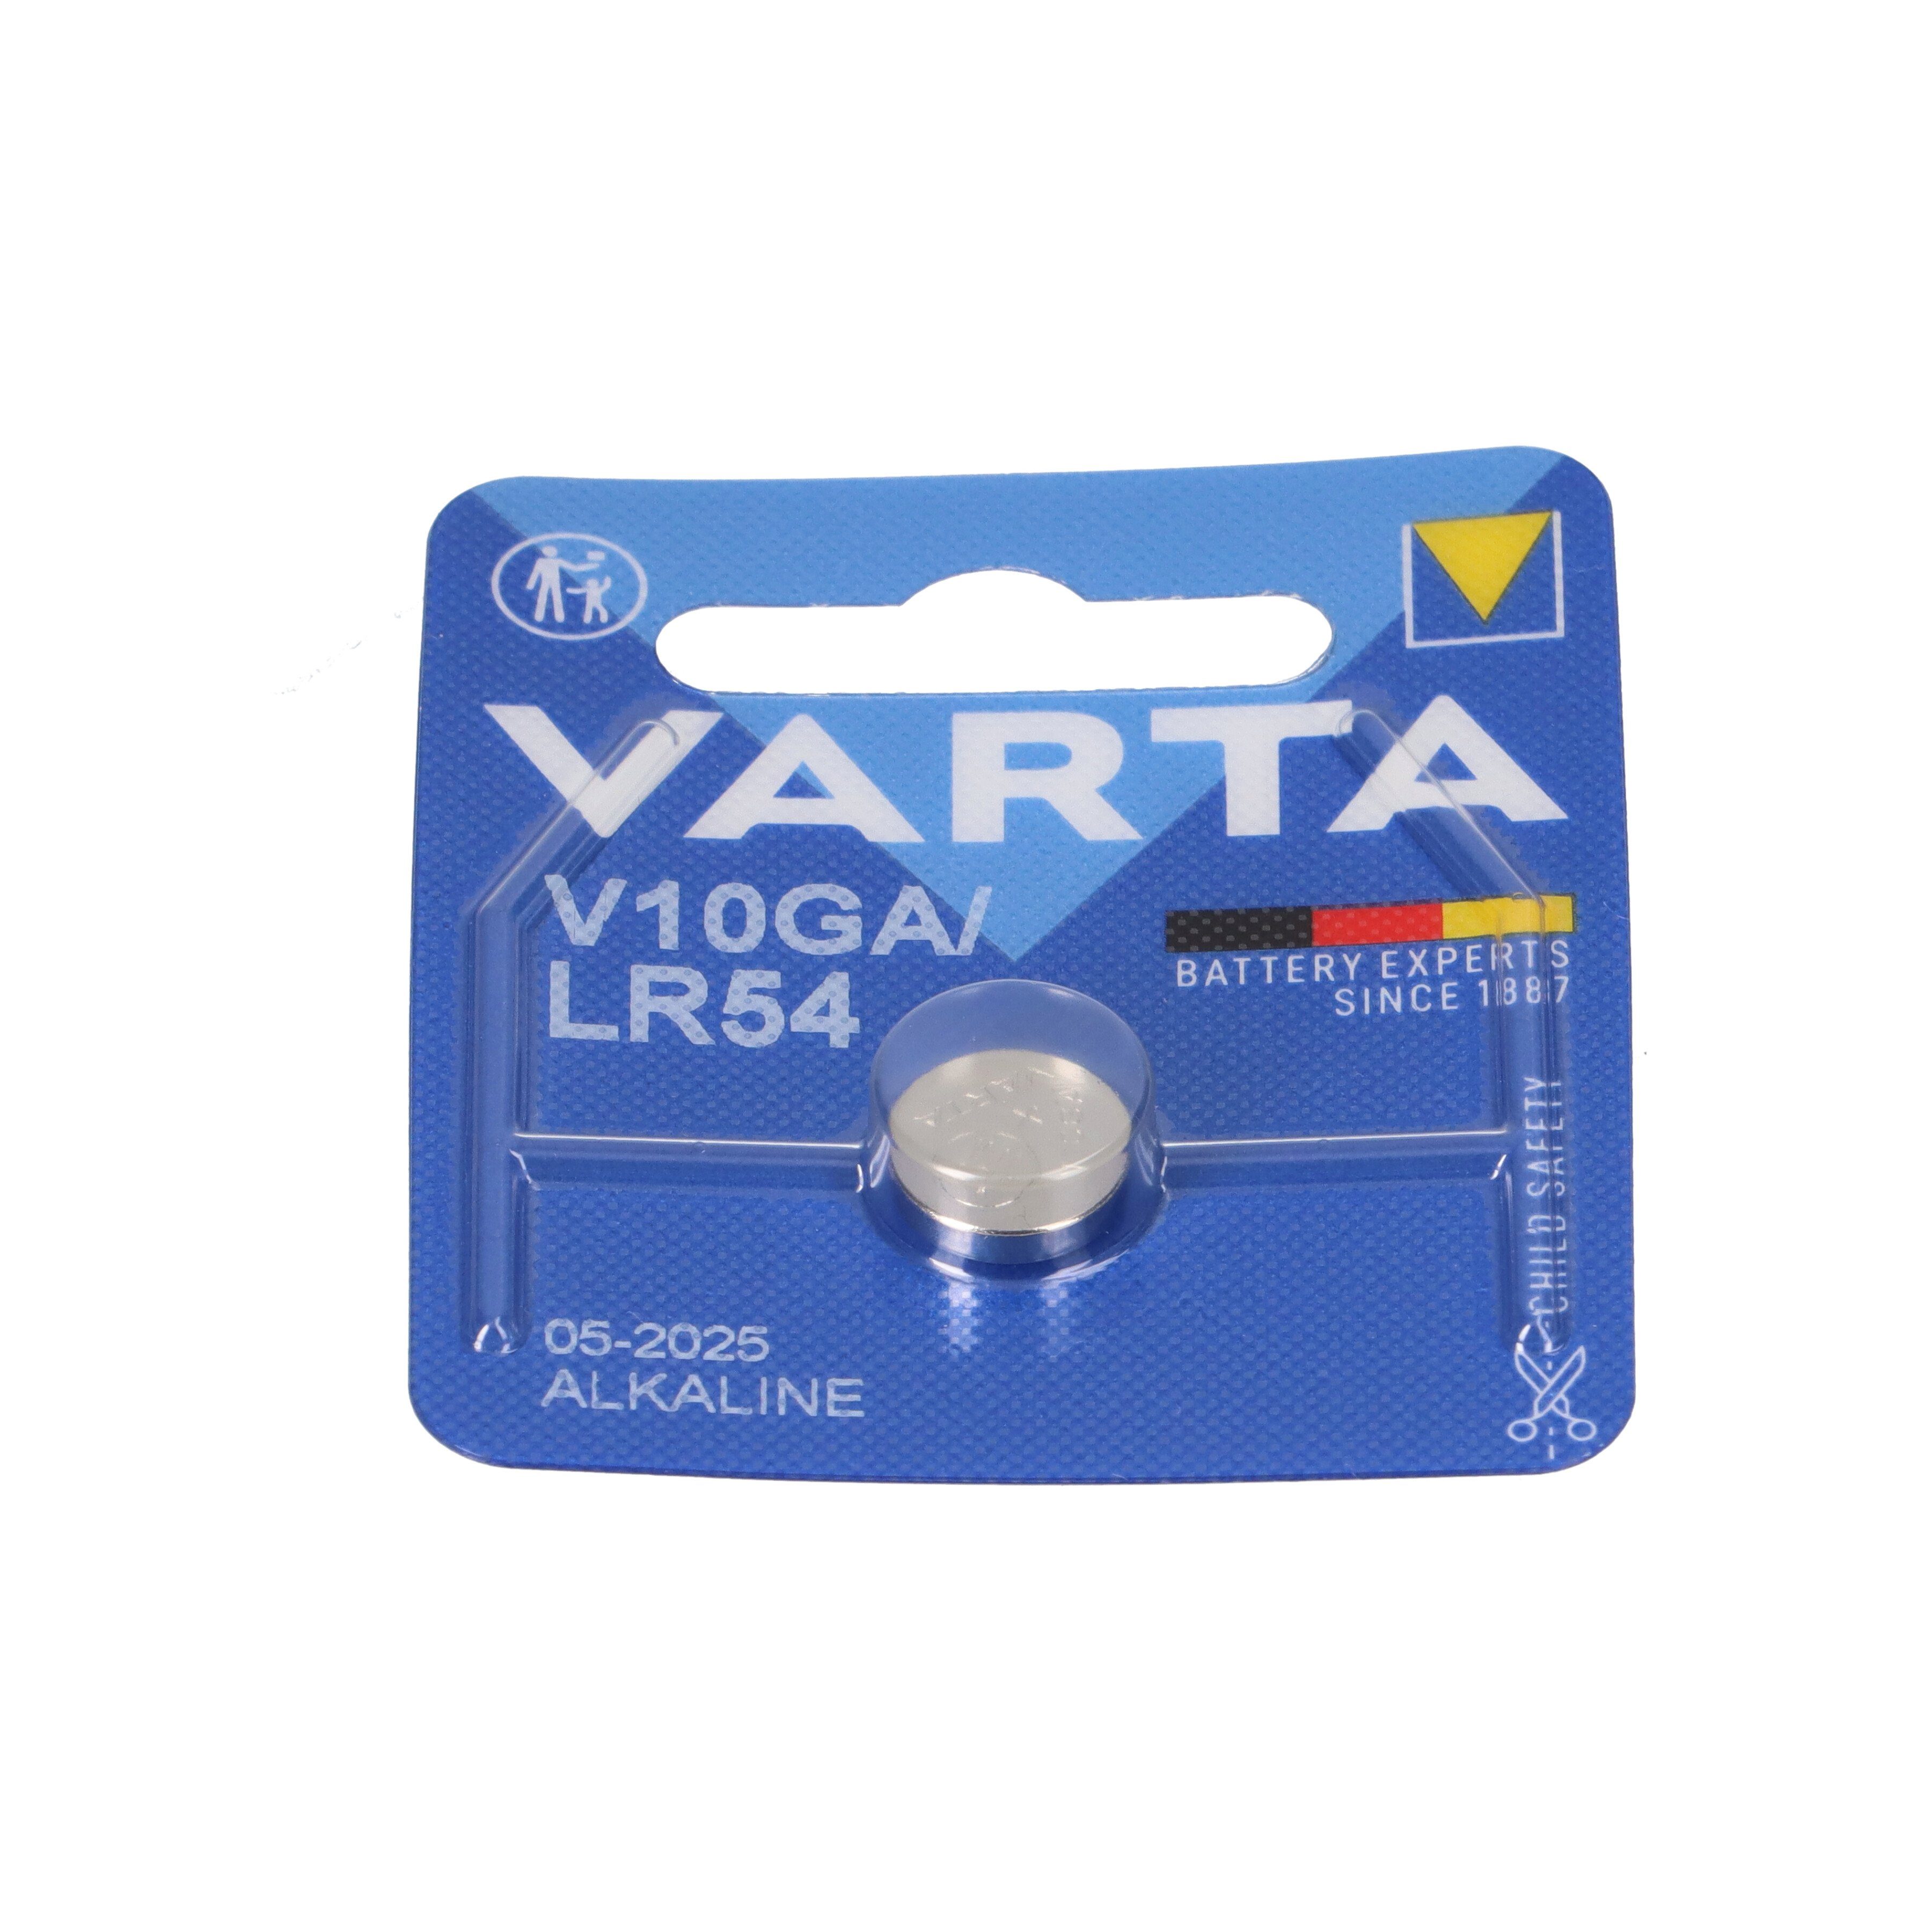 VARTA 10x Varta 1,5 Knopfzelle Knopfzelle V GA 1er Blister Electronics V 10 Alkaline